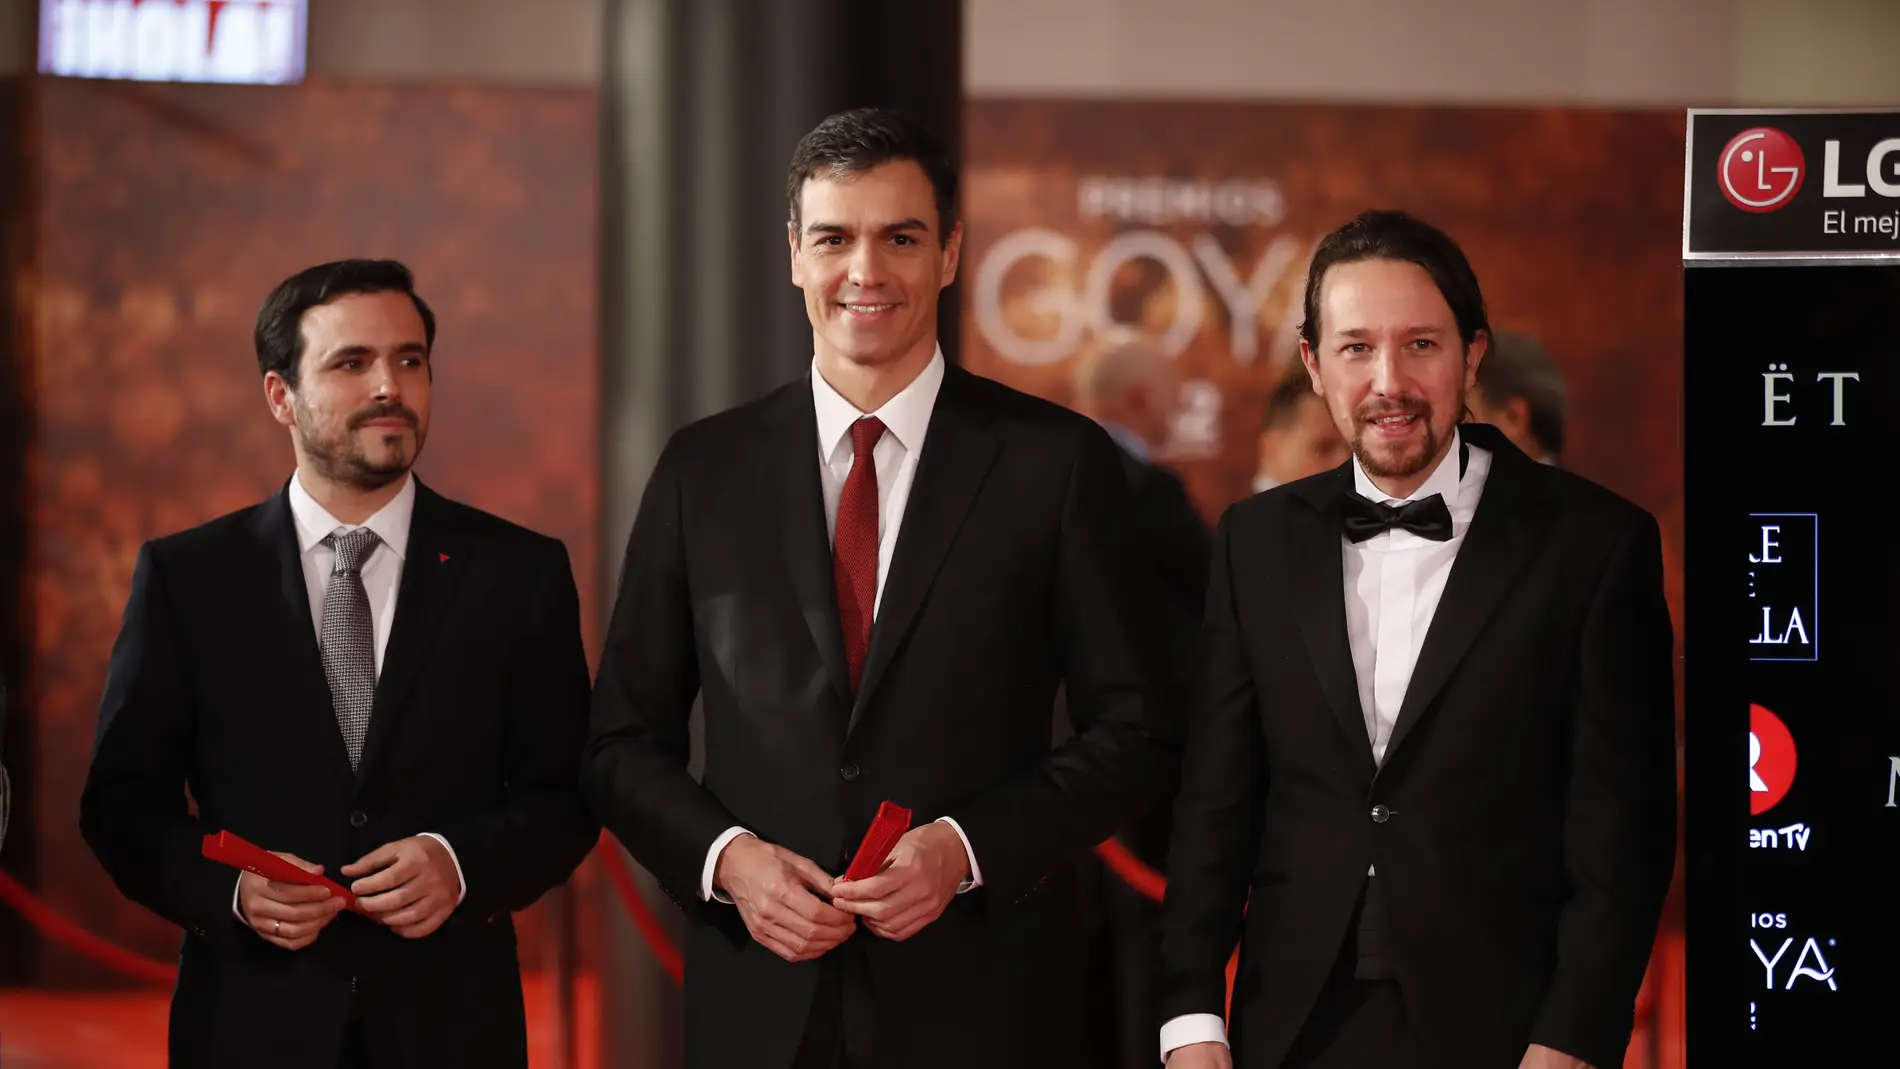 Los políticos Pedro Sánchez, Alberto Garzón y Pablo Iglesias